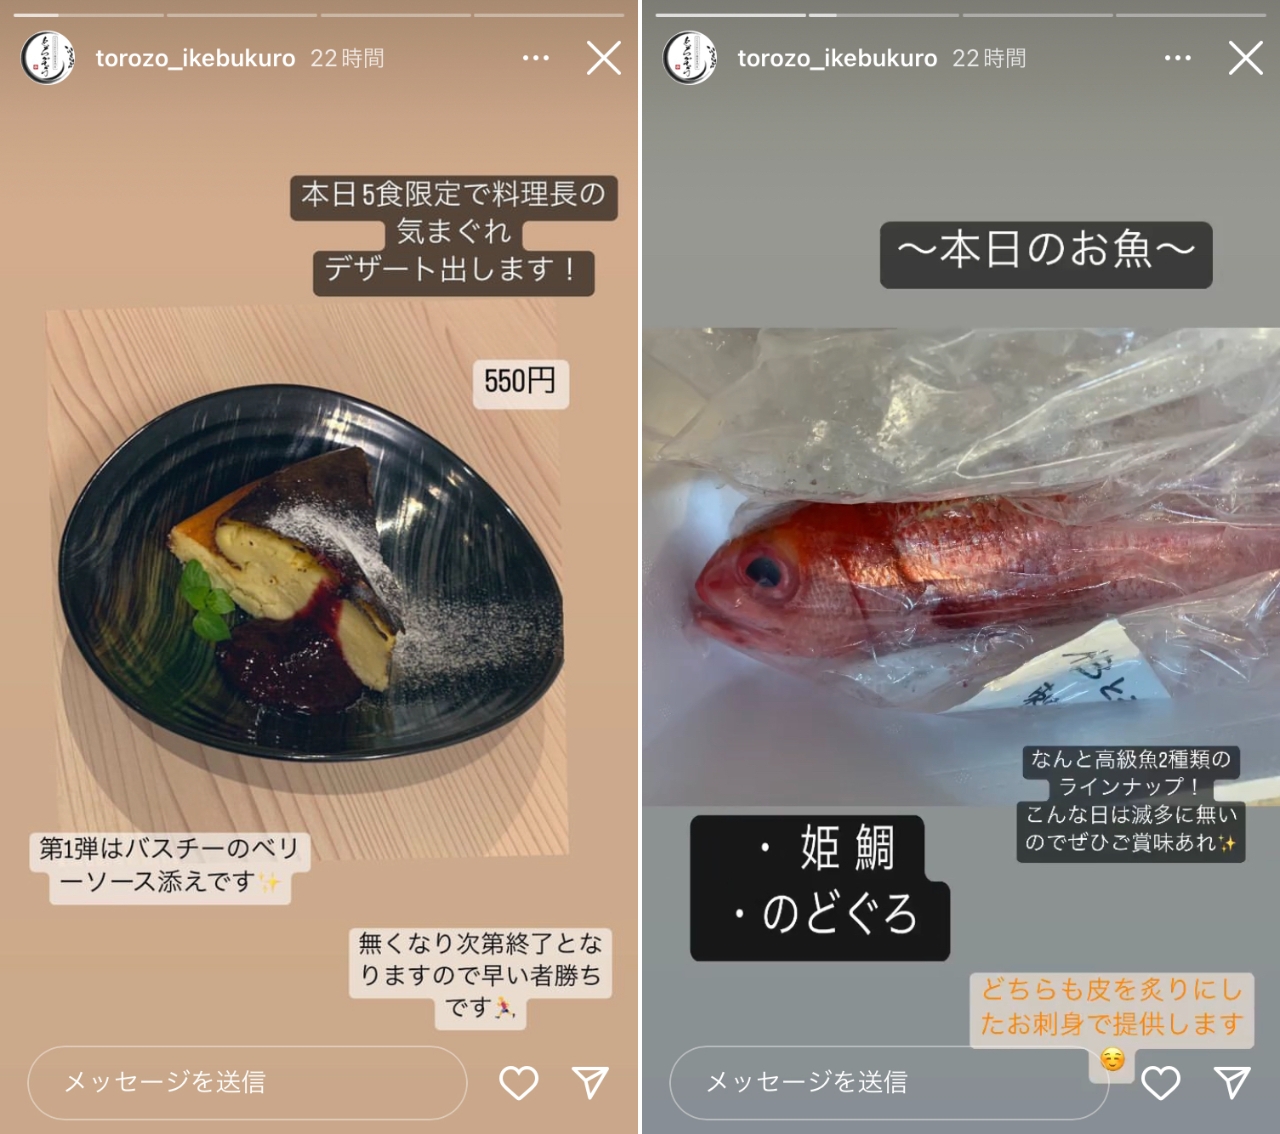 店舗のInstagram（https://www.instagram.com/torozo_ikebukuro/）ストーリーズではその日のおすすめ料理が紹介されていることも。